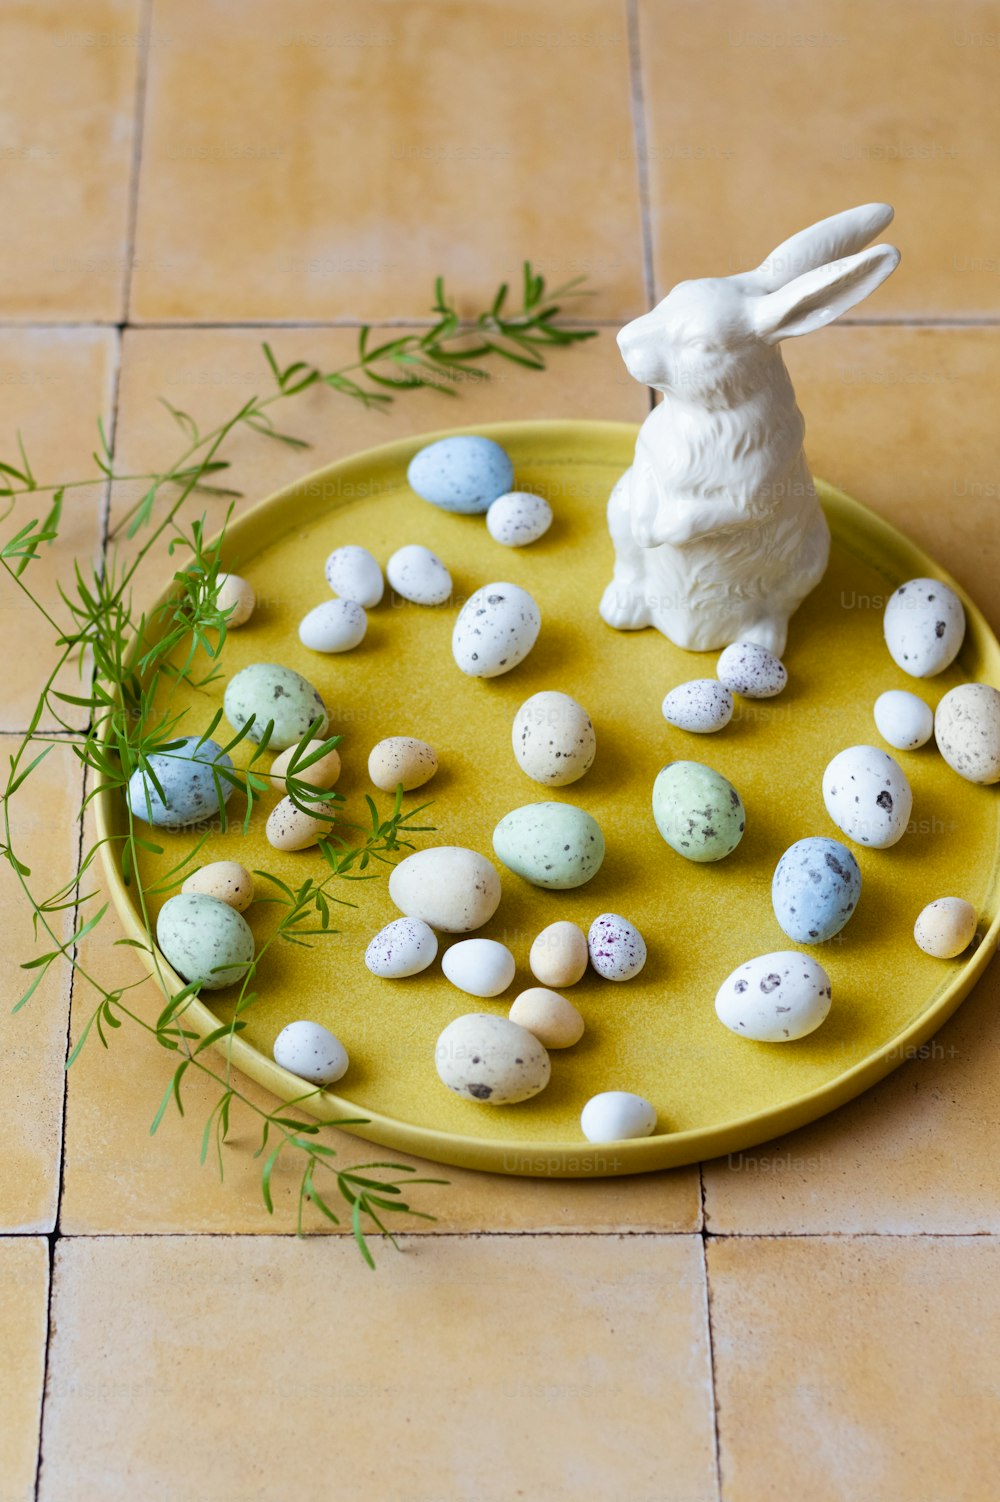 작은 계란과 토끼 동상을 얹은 노란색 접시